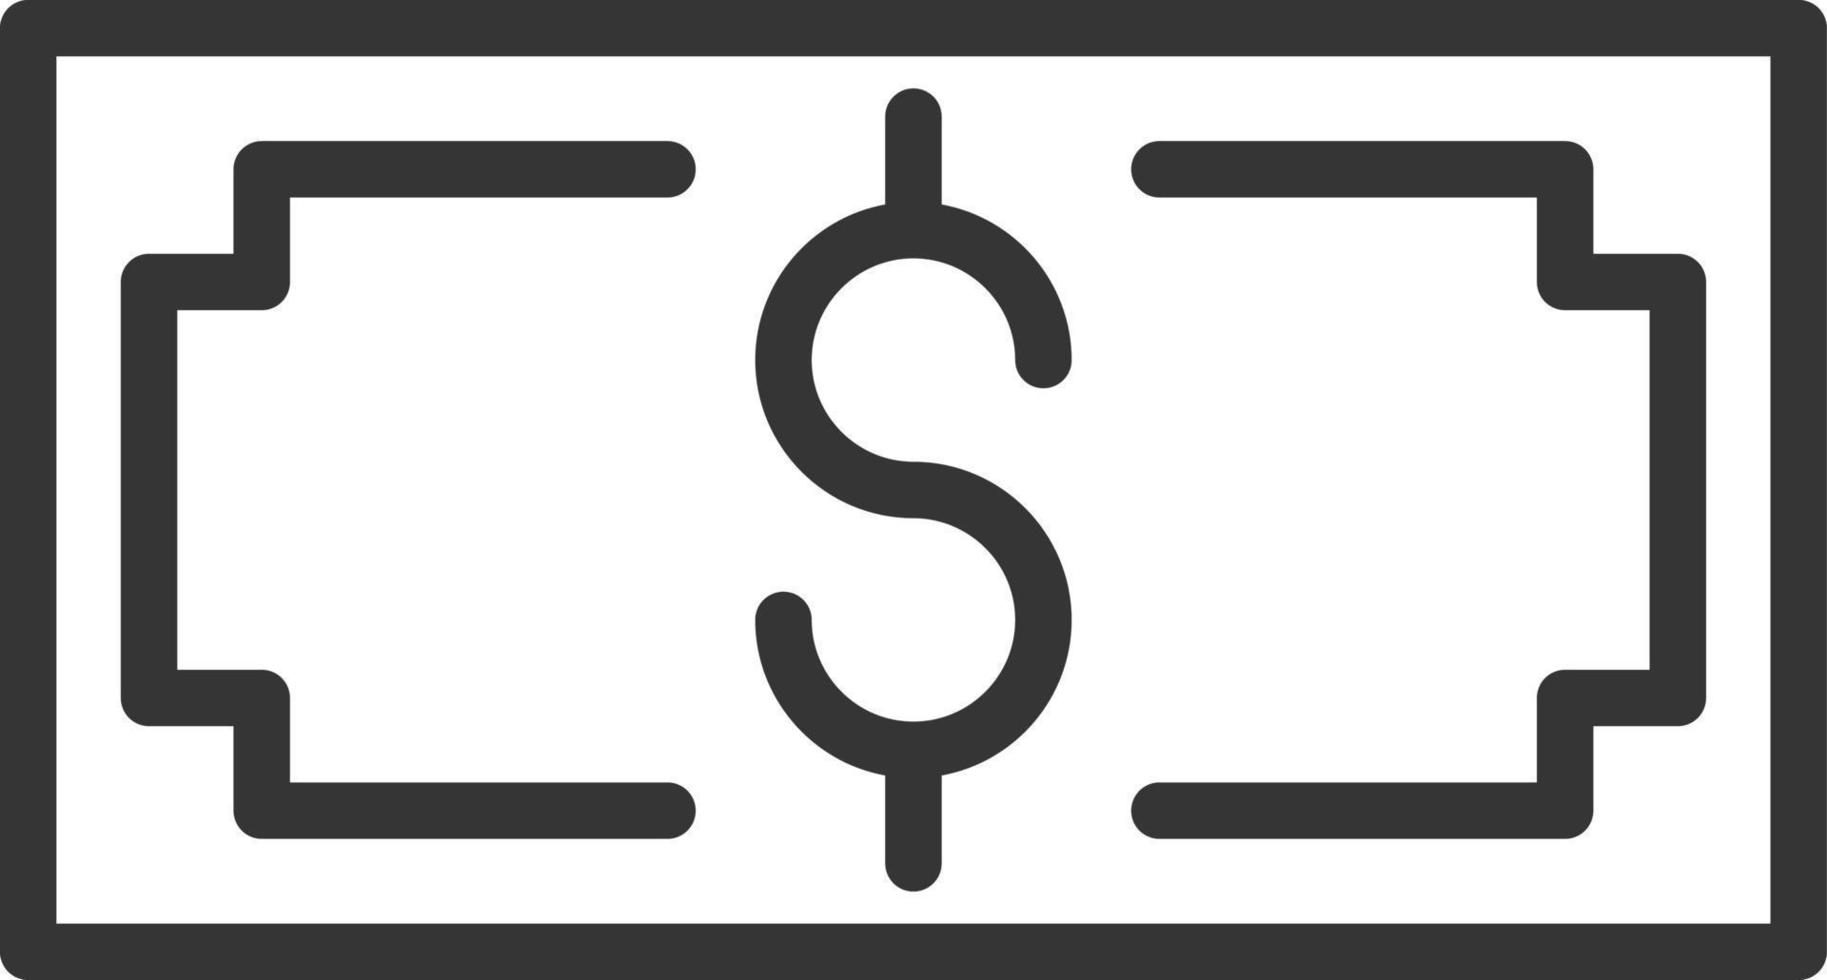 note d'argent, illustration, vecteur sur fond blanc.